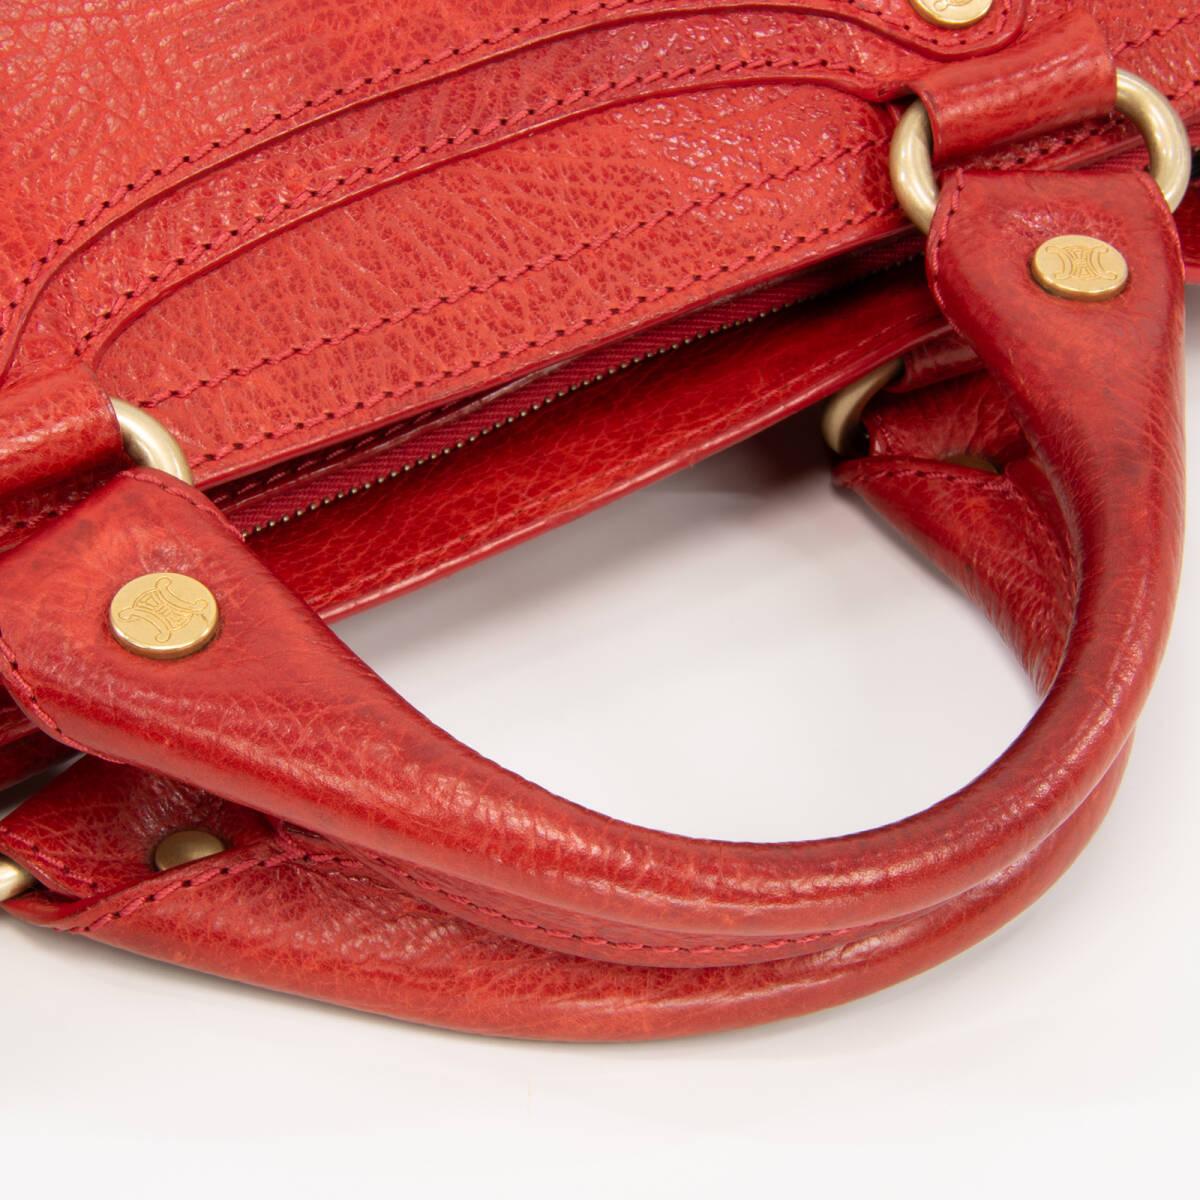 【全額返金保証・送料無料・良品】セリーヌ・ハンドバッグ(ブギーバッグ・人気・レア・珍しい・赤・レッド・鞄・バック・E316)